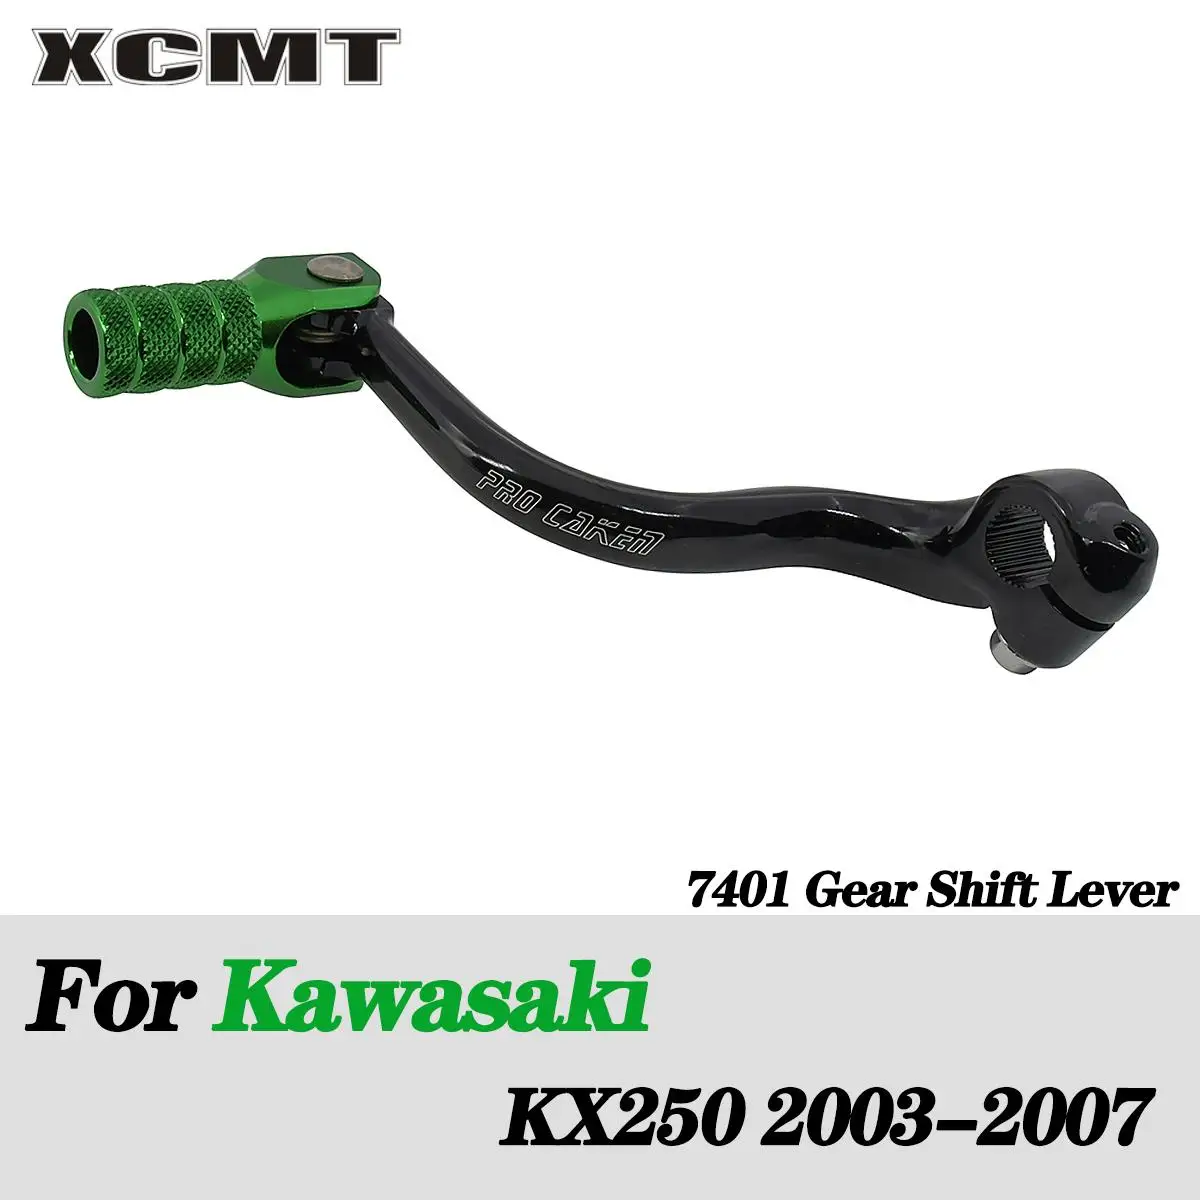 

Складной рычаг переключения передач для мотоцикла с ЧПУ для Kawasaki KX250 KX 250 2003 2004 2005 2006 MX Enduro внедорожный питбайк